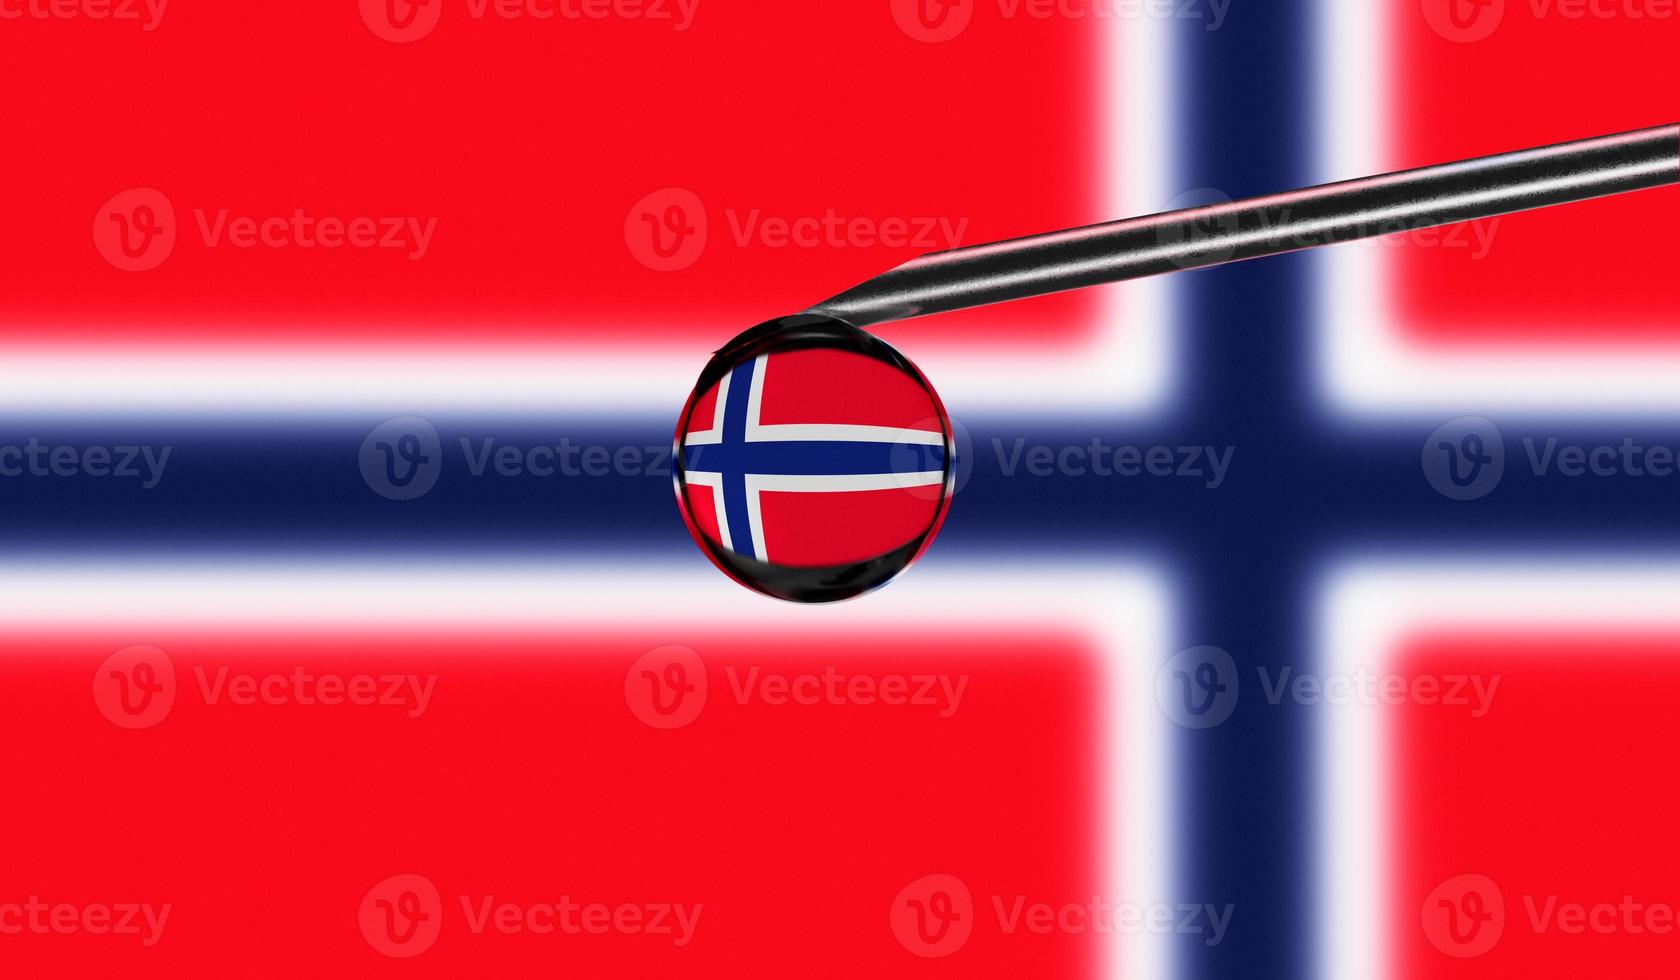 impfspritze mit tropfen auf der nadel vor dem hintergrund der nationalflagge von norwegen. medizinisches Konzept Impfung. coronavirus sars-cov-2 pandemieschutz. Nationale Sicherheitsidee. foto